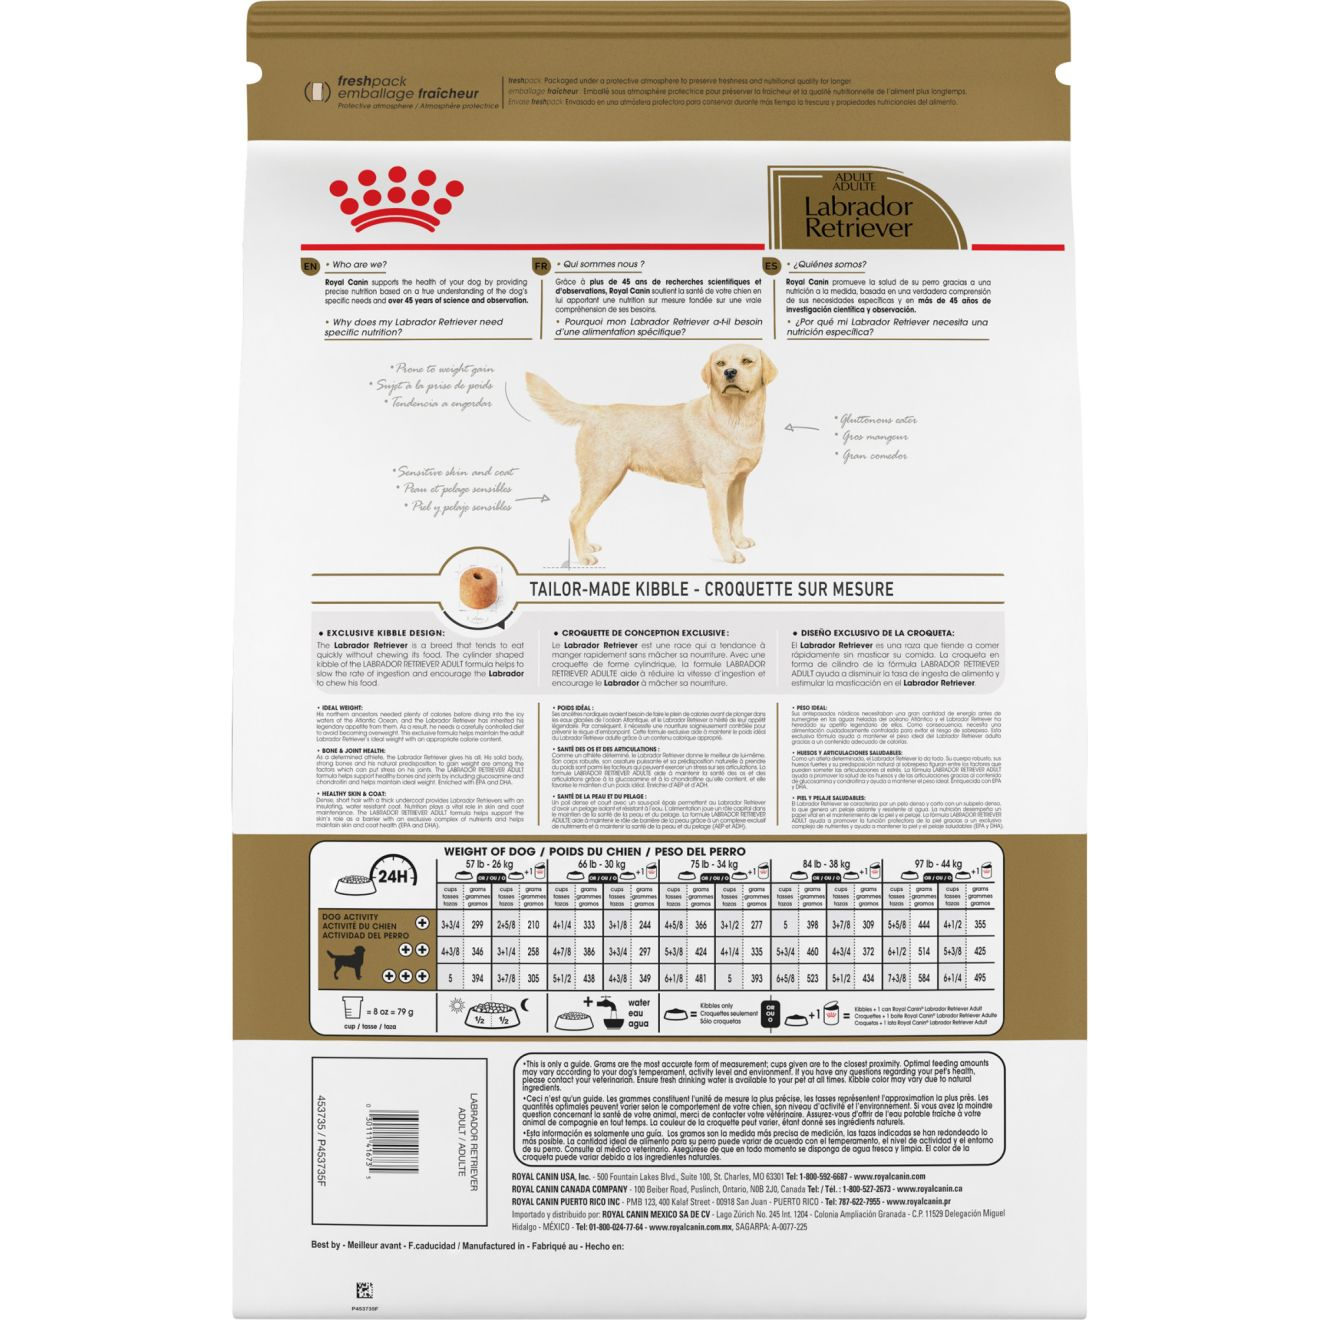 Labrador Retriever Adult Dry Dog Food